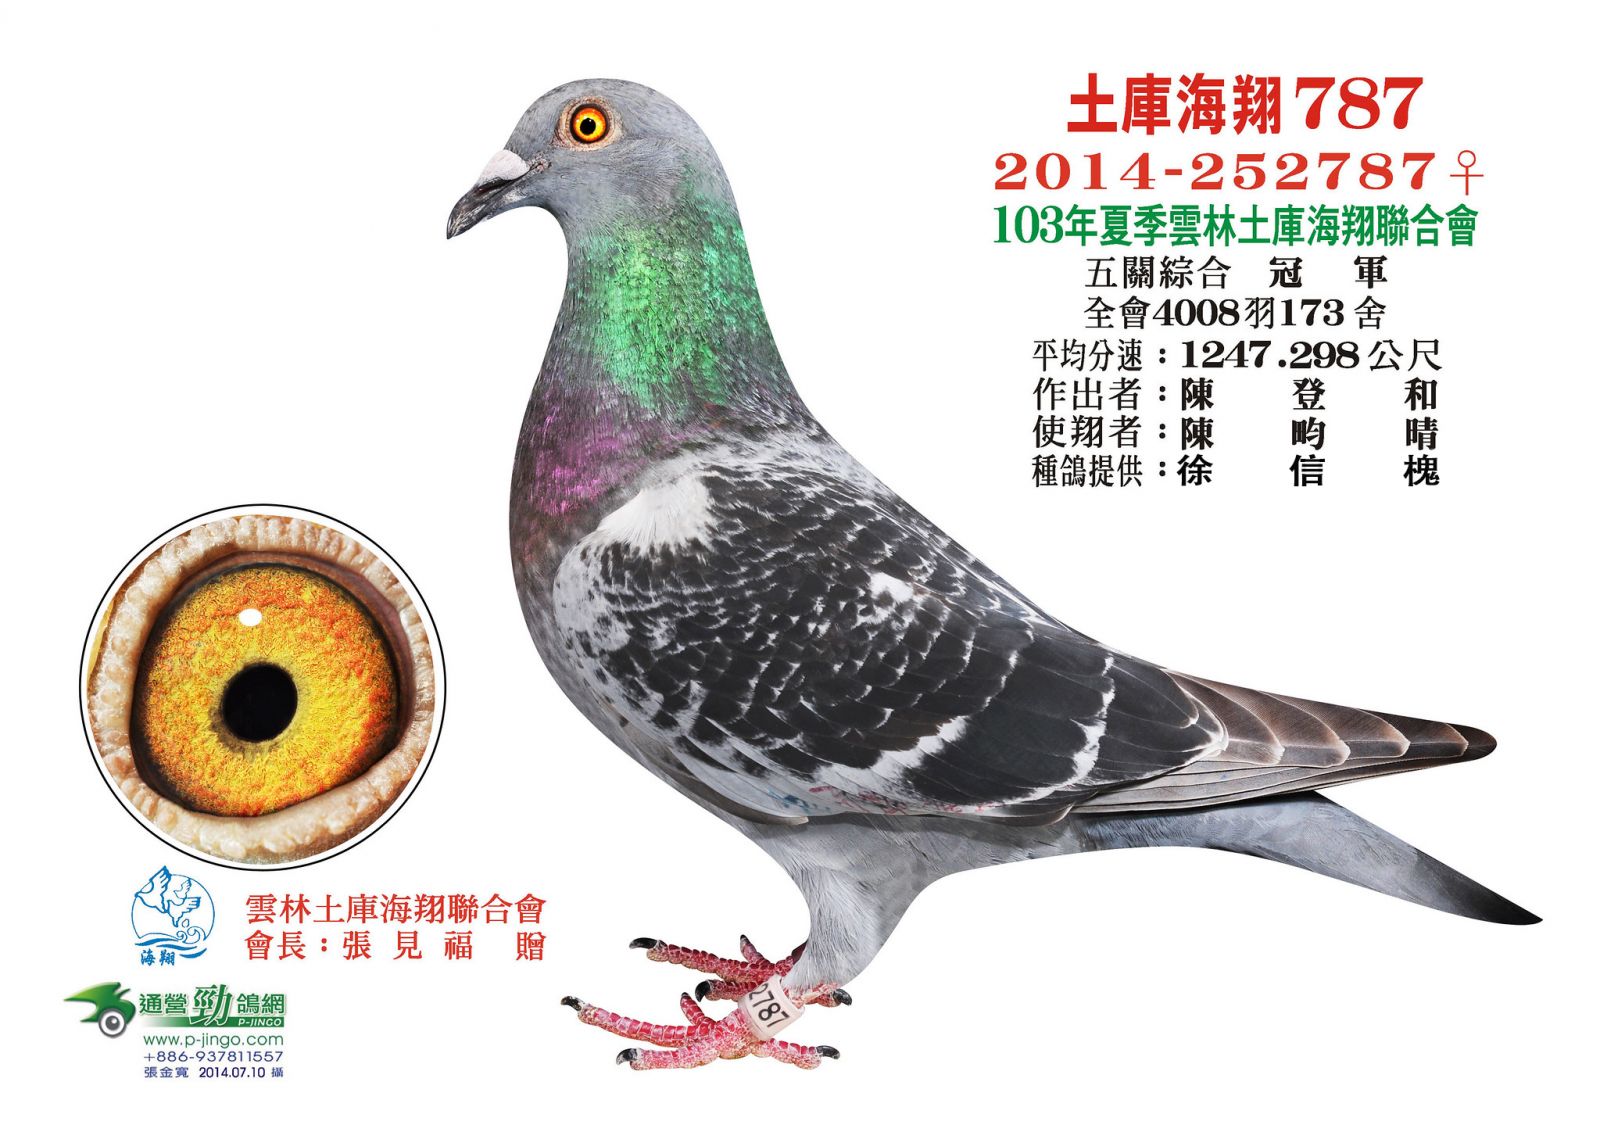 好鴿網nicepigeon 台灣賽鴿拍賣網站最佳首選!